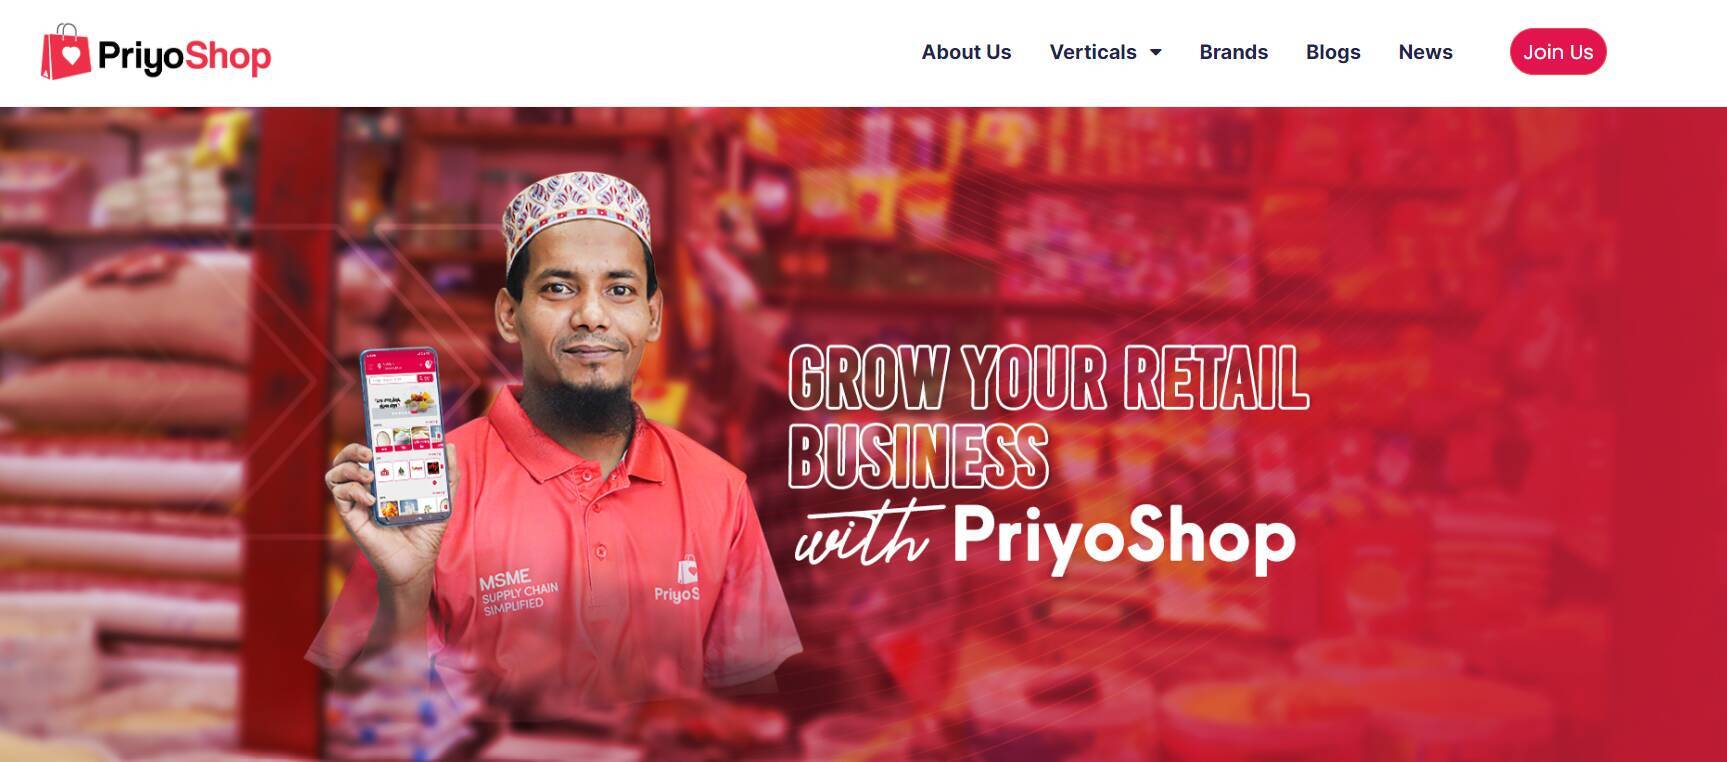 児童労働問題の解決にも一手、パパママショップ経営者の働き方を変えるバングラデシュのオンライン卸売「PriyoShop」